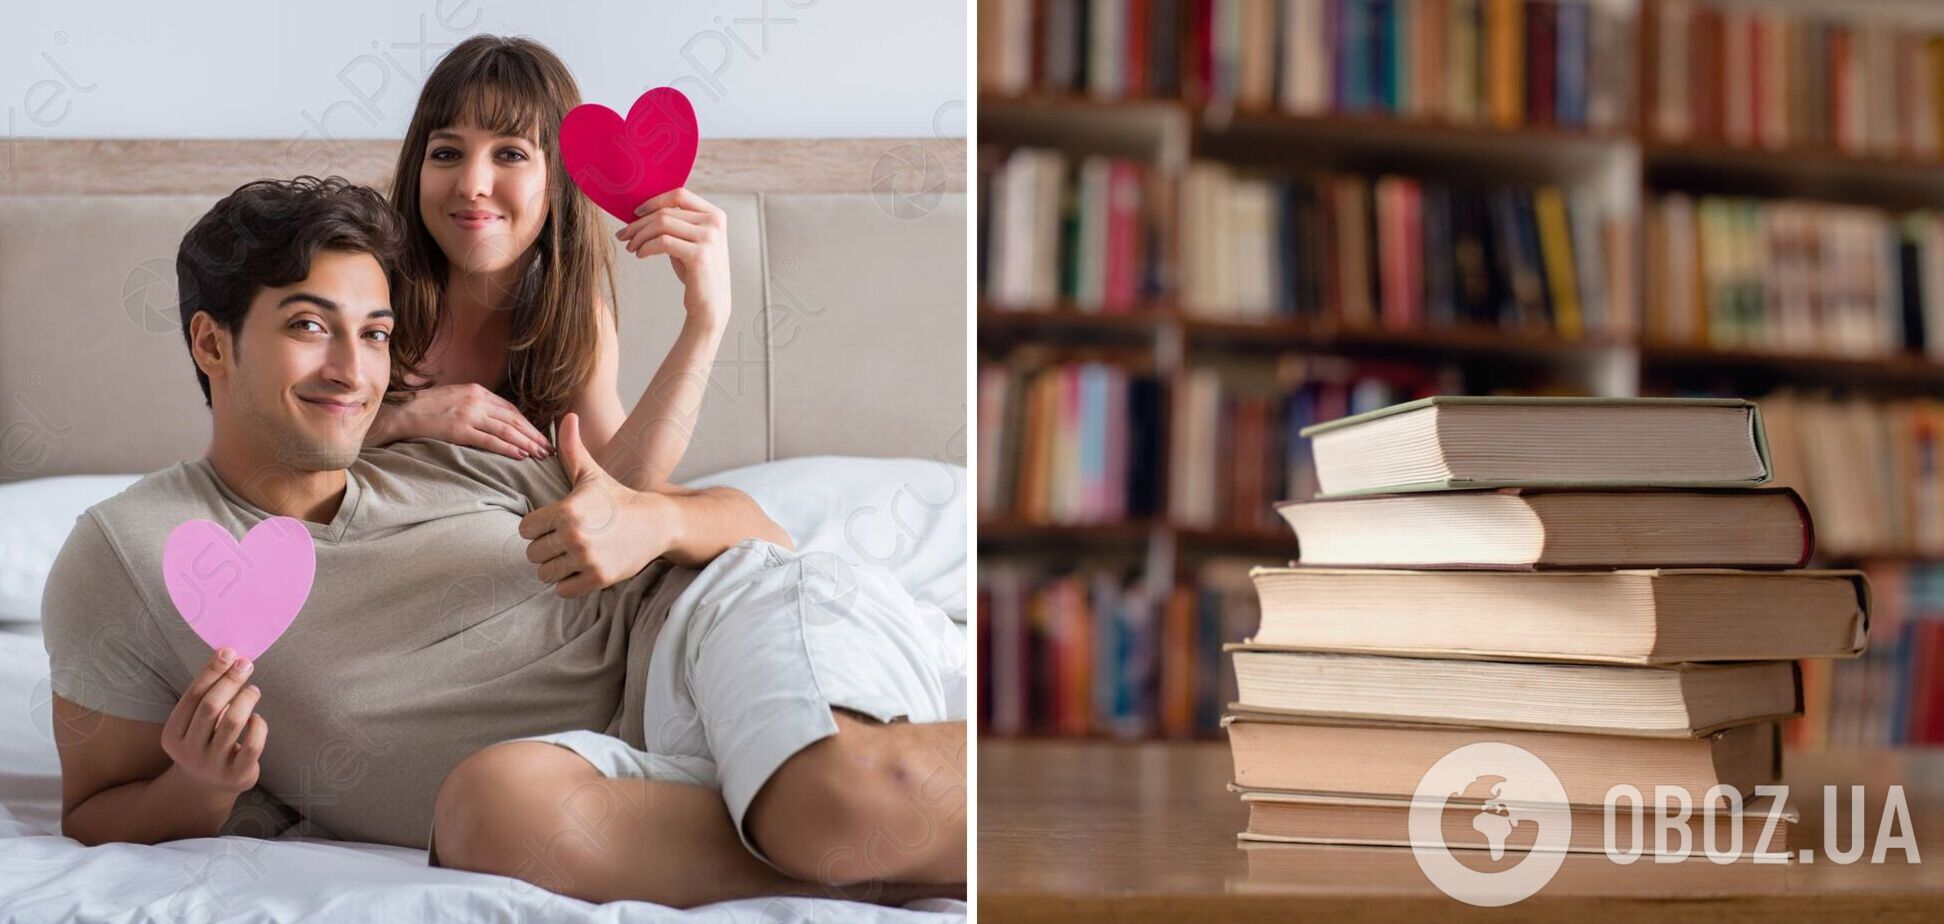 П'ять книг про секс, які варто прочитати. Рекомендує сексолог